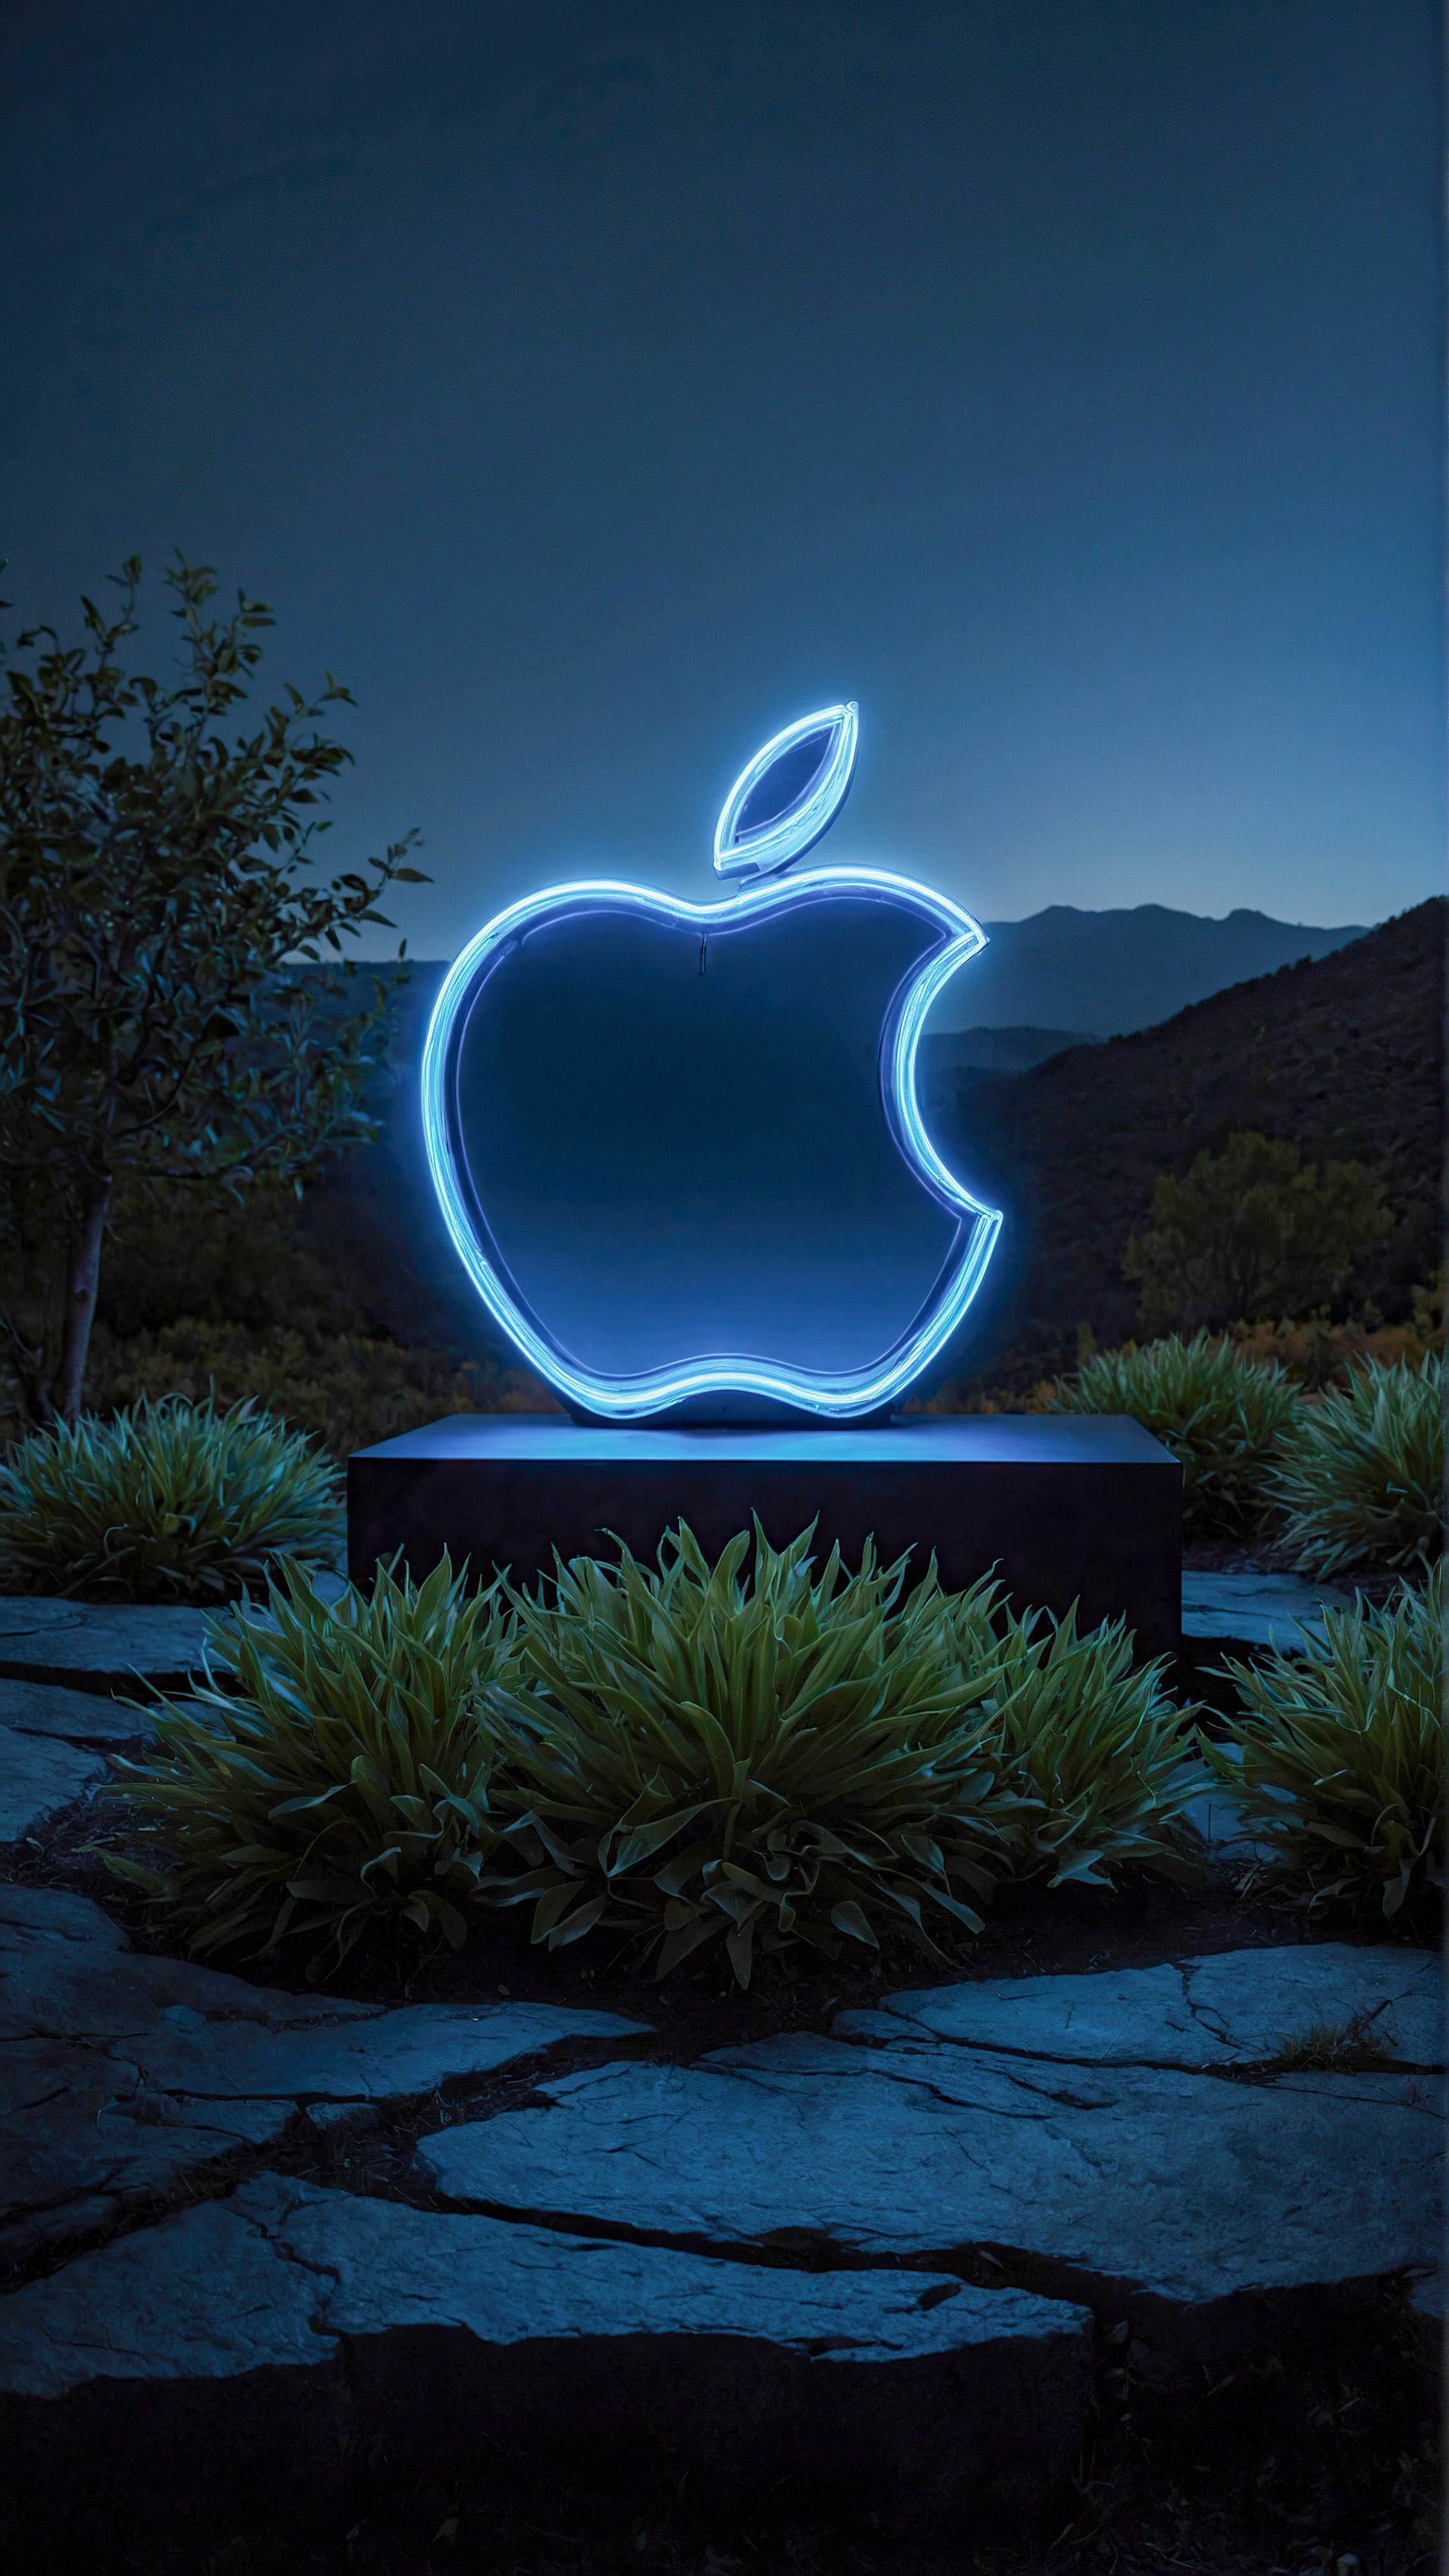 Ornez votre iPhone avec notre fond d'écran HD, mettant en valeur le logo Apple illuminé avec un contour bleu néon, contenant un paysage serein à l'intérieur, sur un fond sombre. 